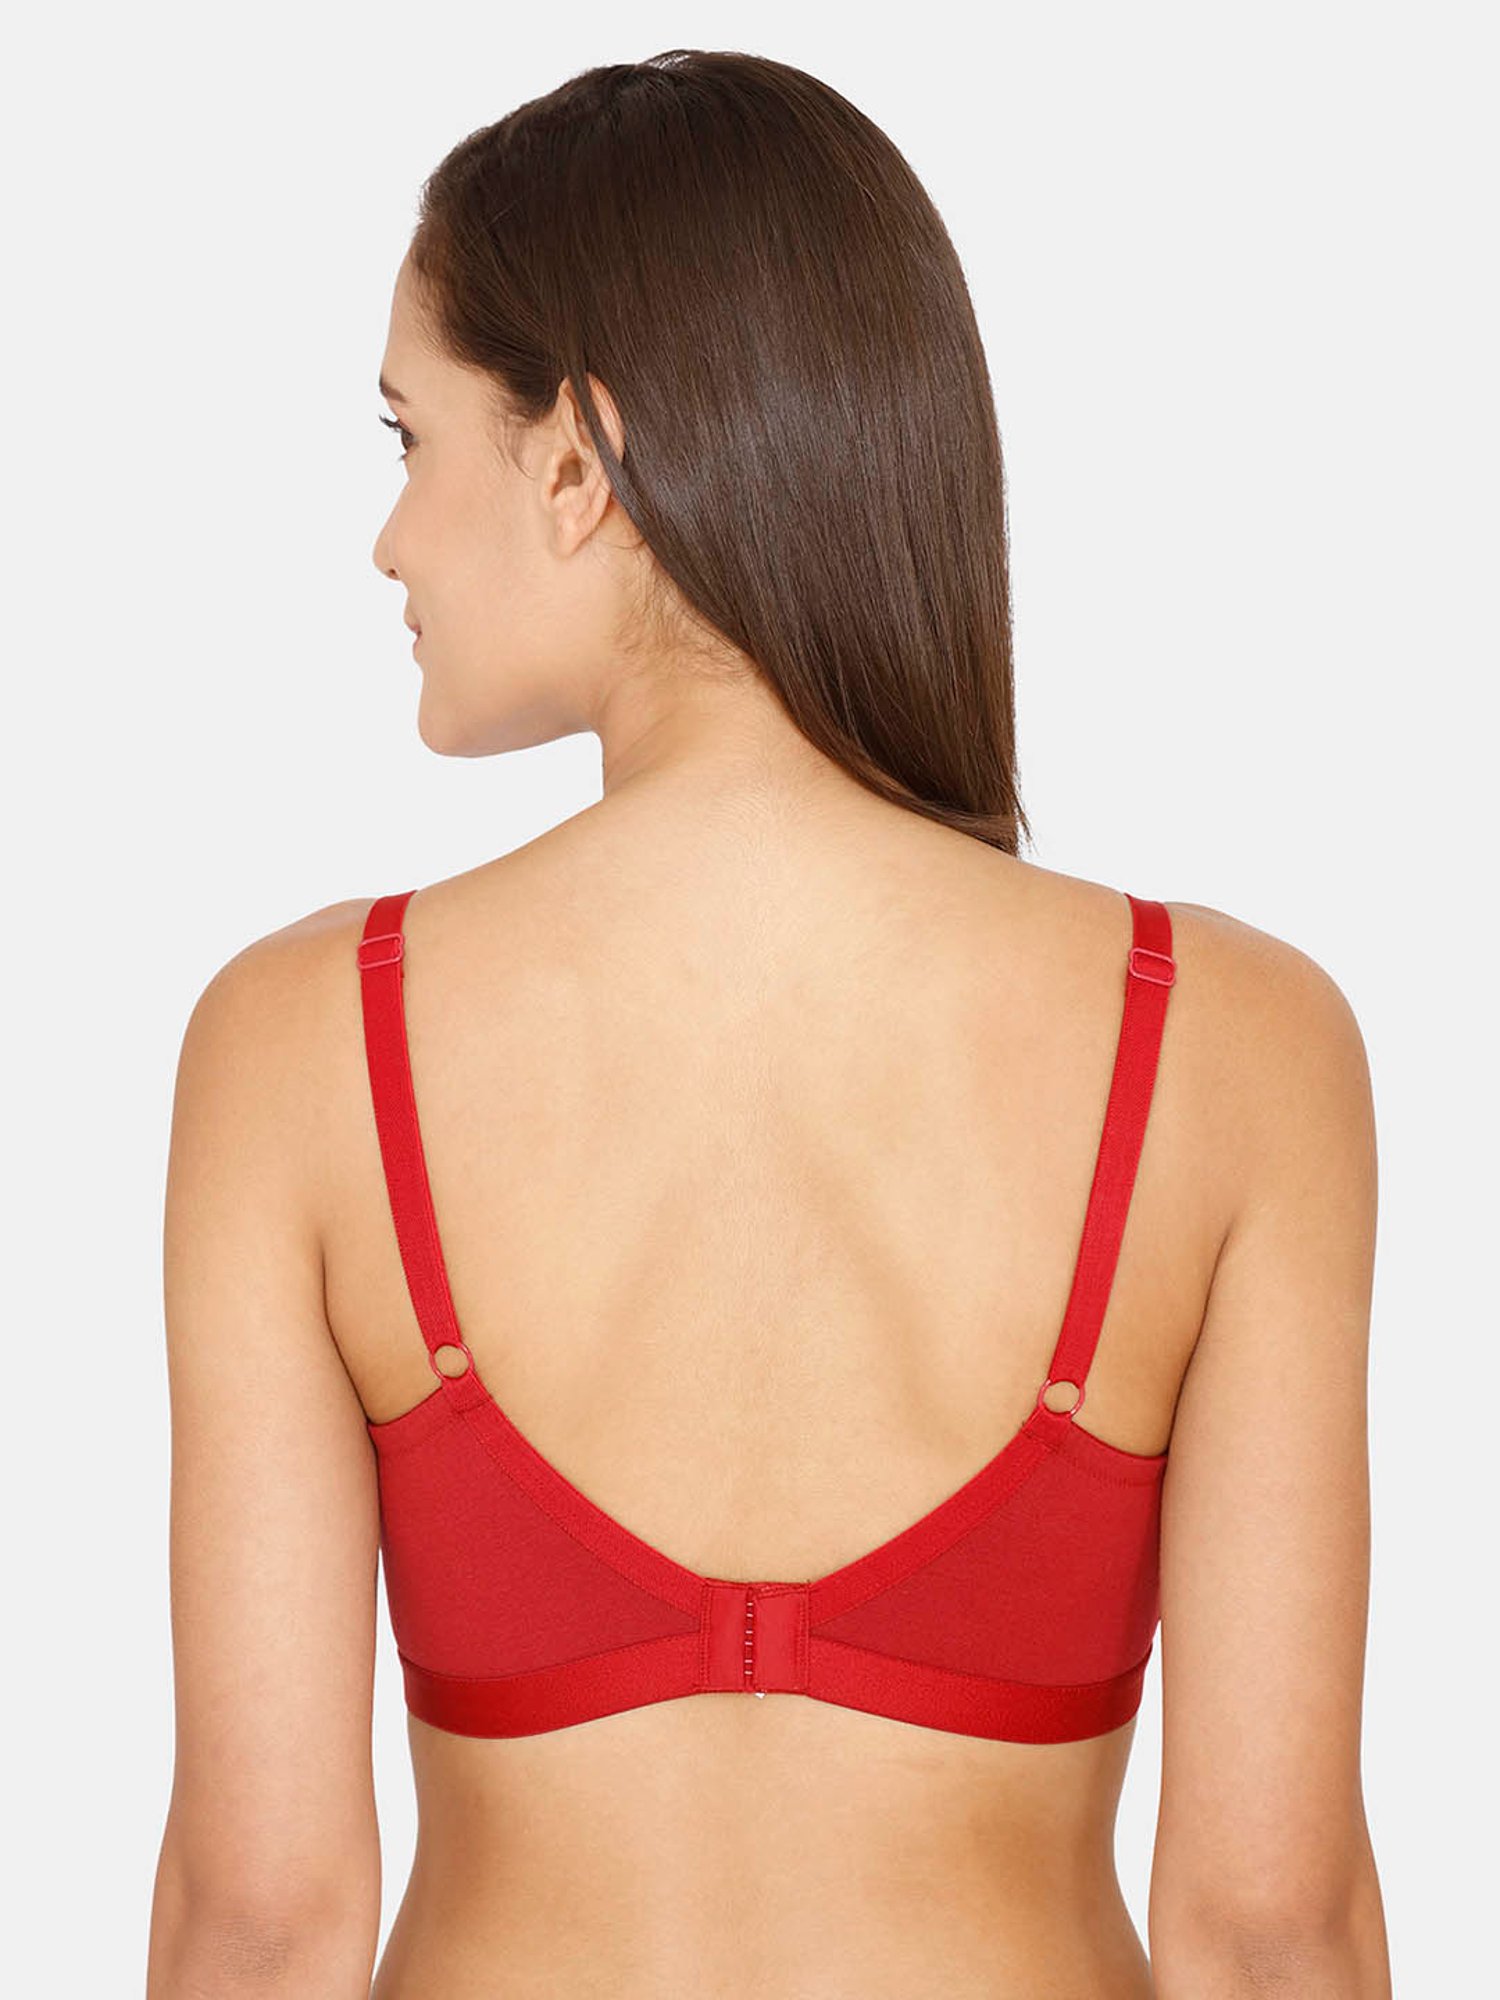 Buy Zivame Red Non Wired Non Padded Minimiser Bra for Women Online